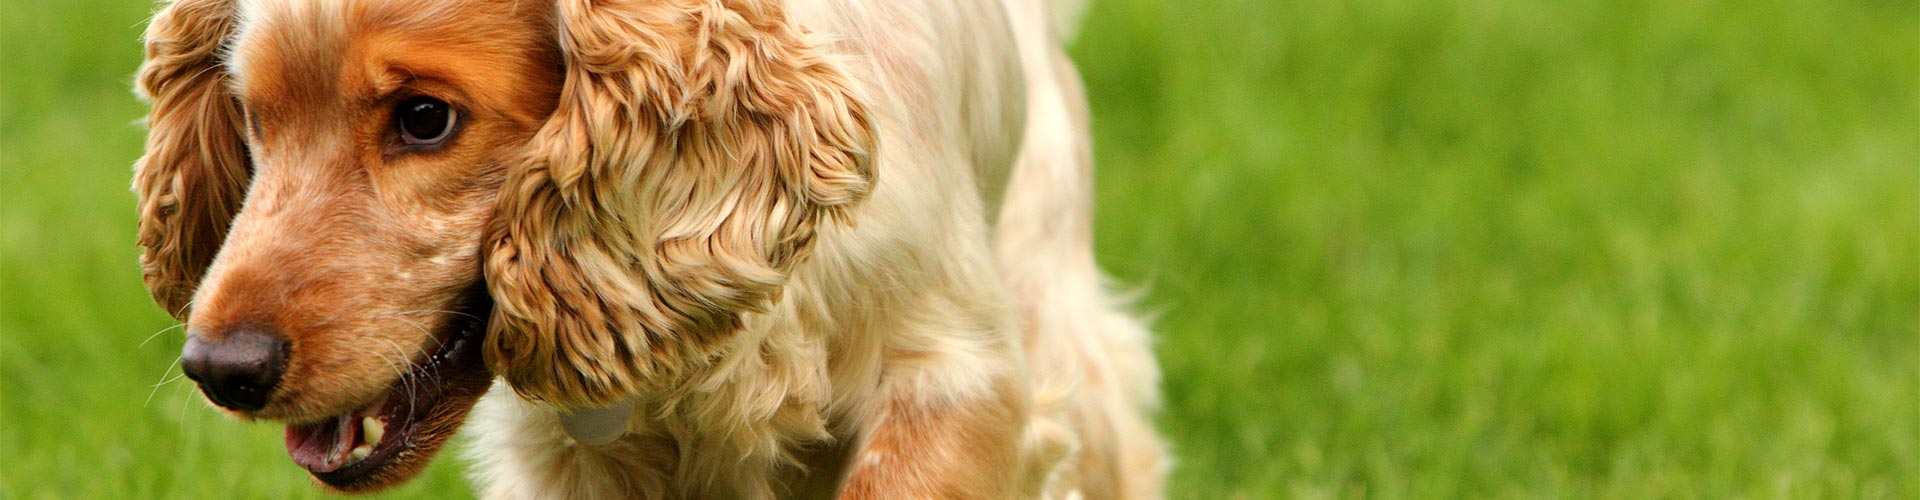 Casas rurales que admiten perros en Lopera